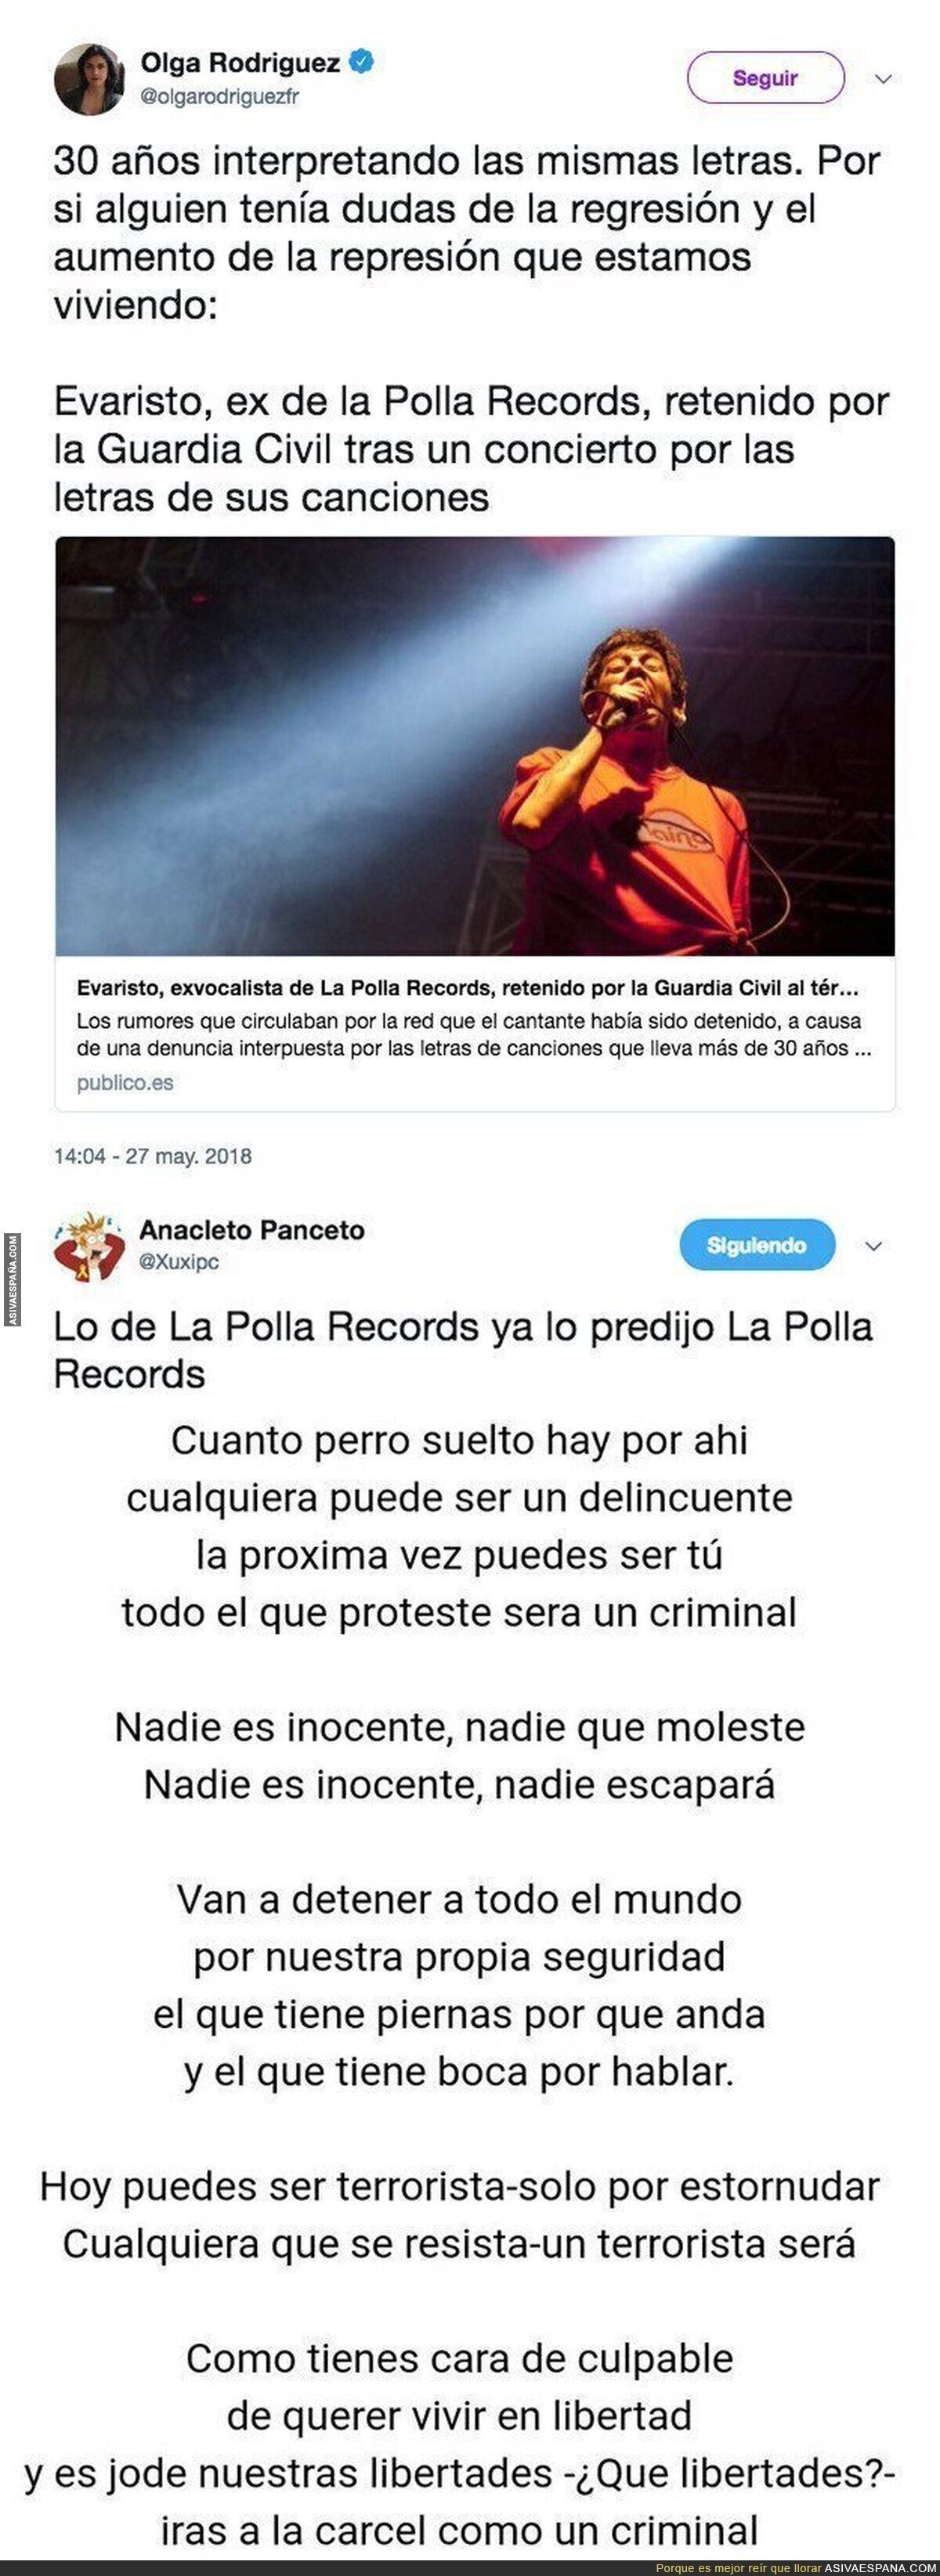 Evaristo de La Polla Records ya predijo en el pasado lo que pasaría en el futuro